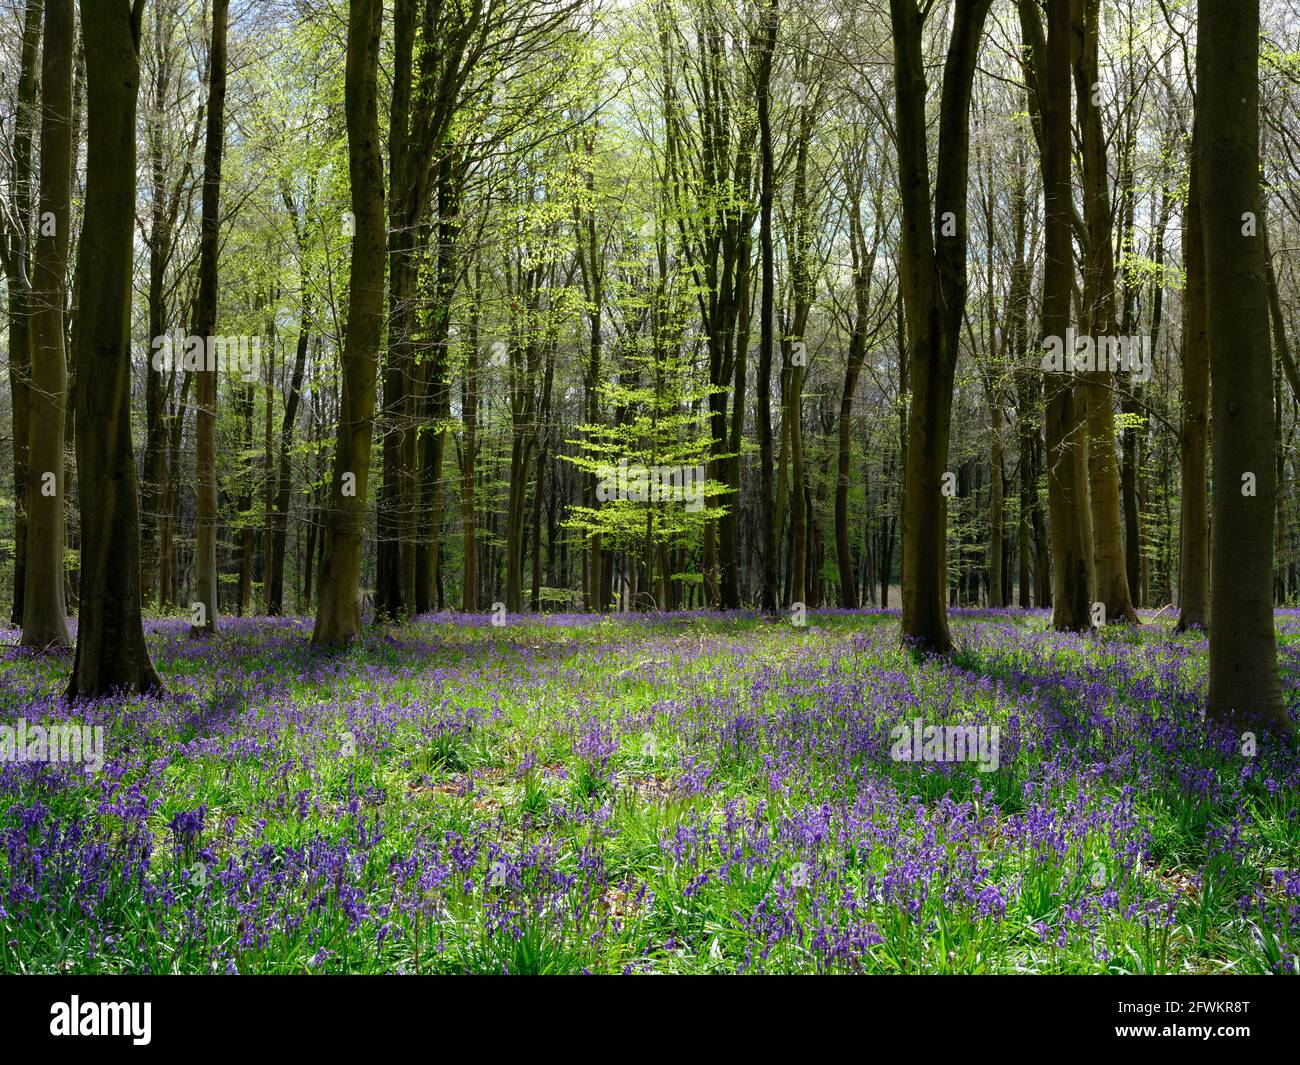 Ein Teppich aus Bluebells (Hyacinthoides non-scripta), der einen Waldboden bedeckt, umgeben von schlanken Bäumen und einem einfarnigen Farn im Hintergrund, England, Großbritannien Stockfoto